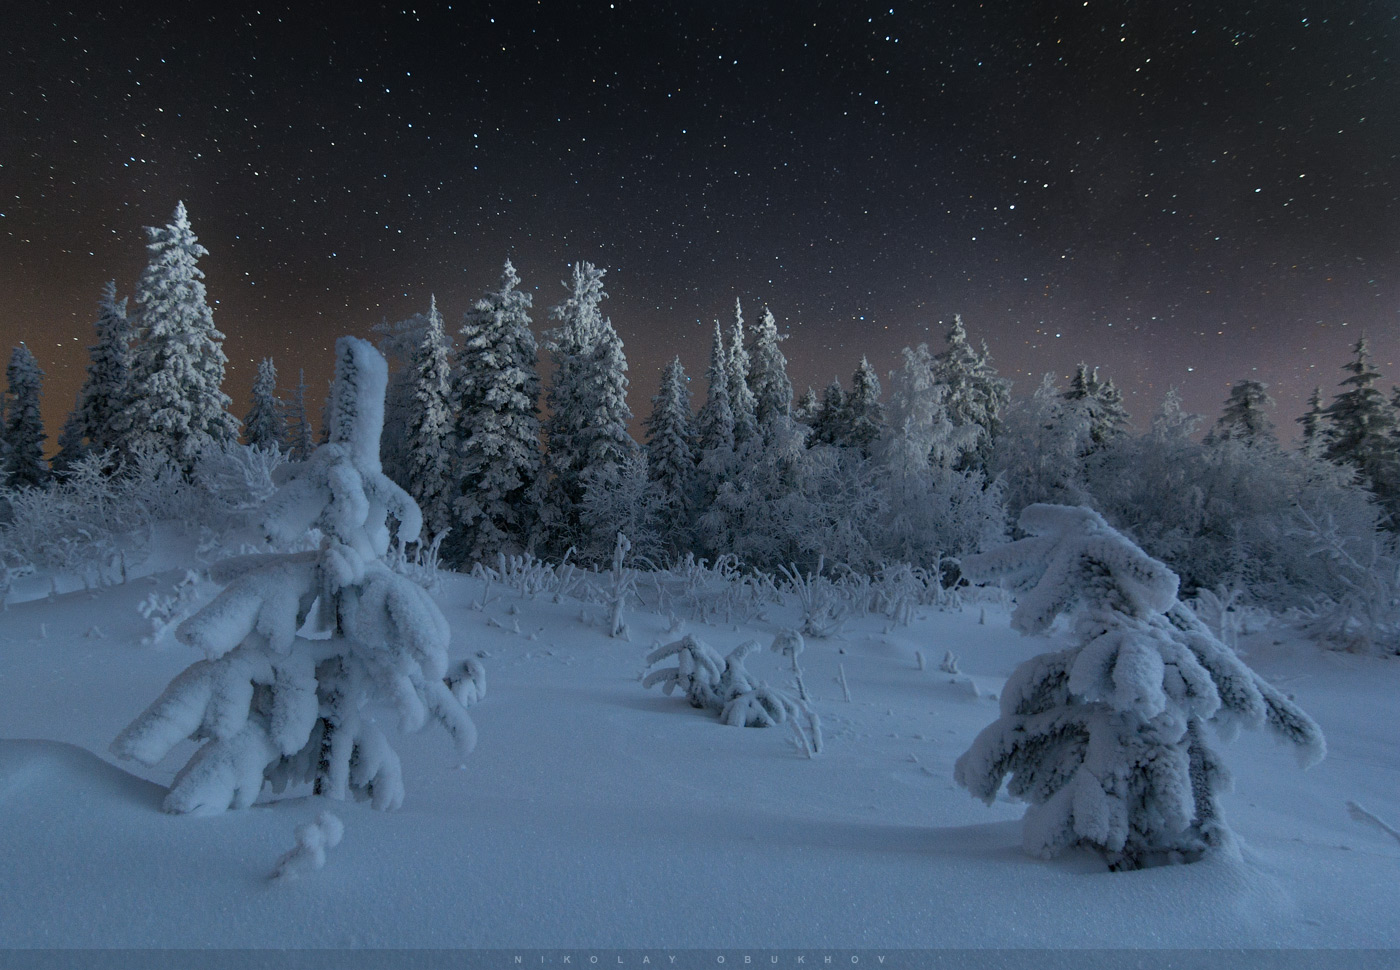 Фотография 3. Пример съемки зимнего пейзажа со звездами. Камера Nikon D7100 с объективом Tokina AT-X 116 PRO DX-II 11-16mm f/2.8. Небо: 12 mm, ISO 2500, f/2.8, 20 s, 1 кадр. Земля: 12 mm, ISO 640, f/2.8, 70 s, 1 кадр.